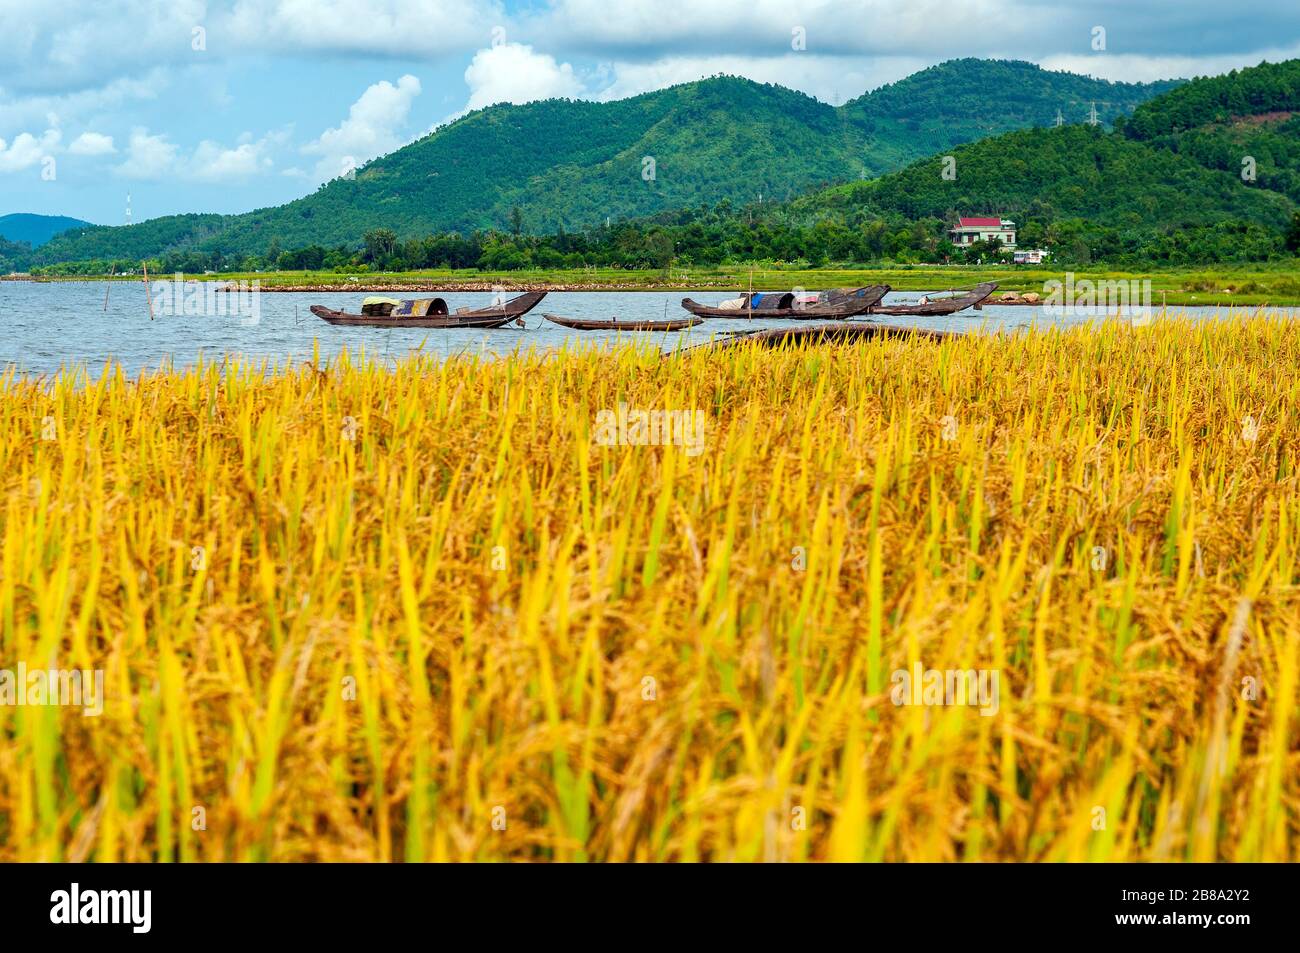 Champ de riz jaune prêt pour la récolte, bateaux de pêche à la crevette et collines vertes entre Hue et Hoi an dans le centre du Vietnam. Champ de riz net, bateaux tranchants. Banque D'Images